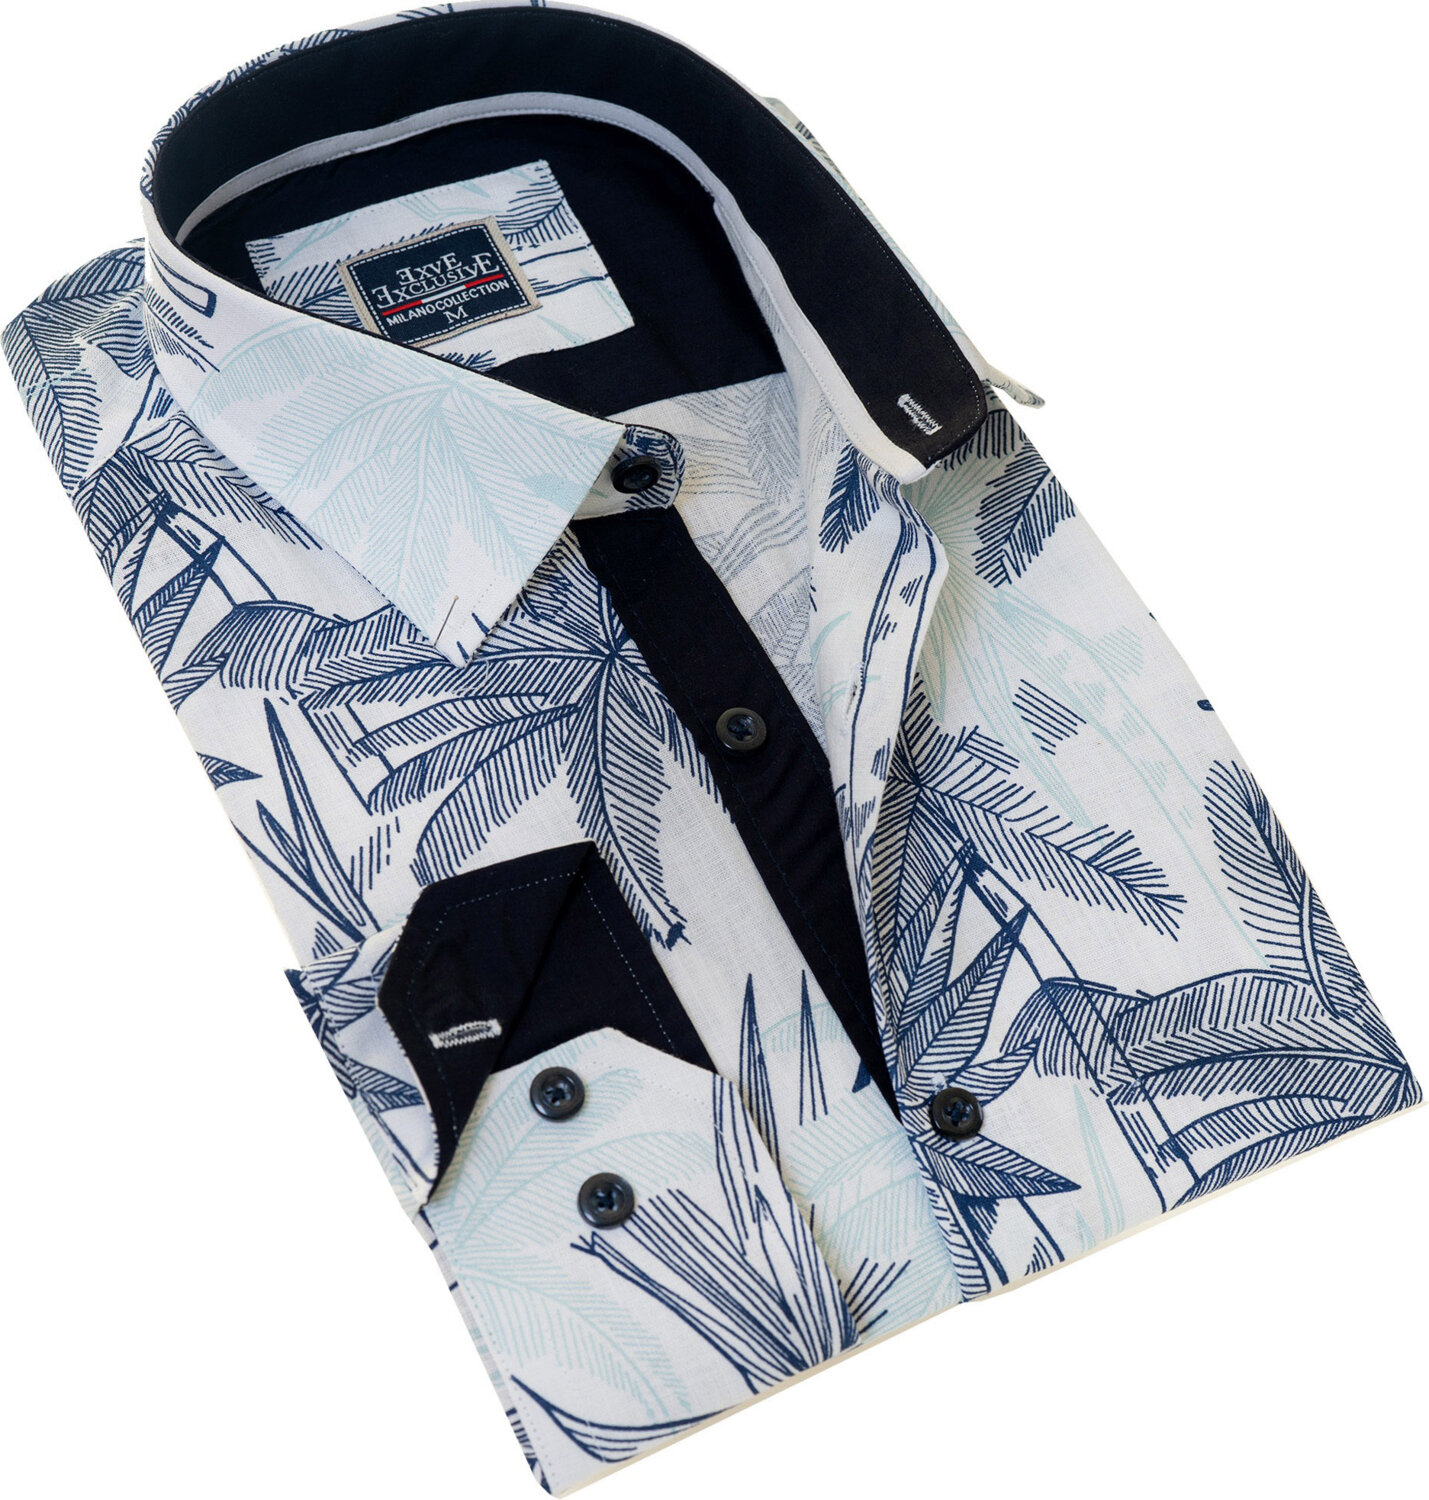 Мужская рубашка Exve Exclusive белая с орнаментом из голубых и зеленых гавайских пальмовых деревьев на льне с узором "пламя" с узким кроем и длинным рукавом.